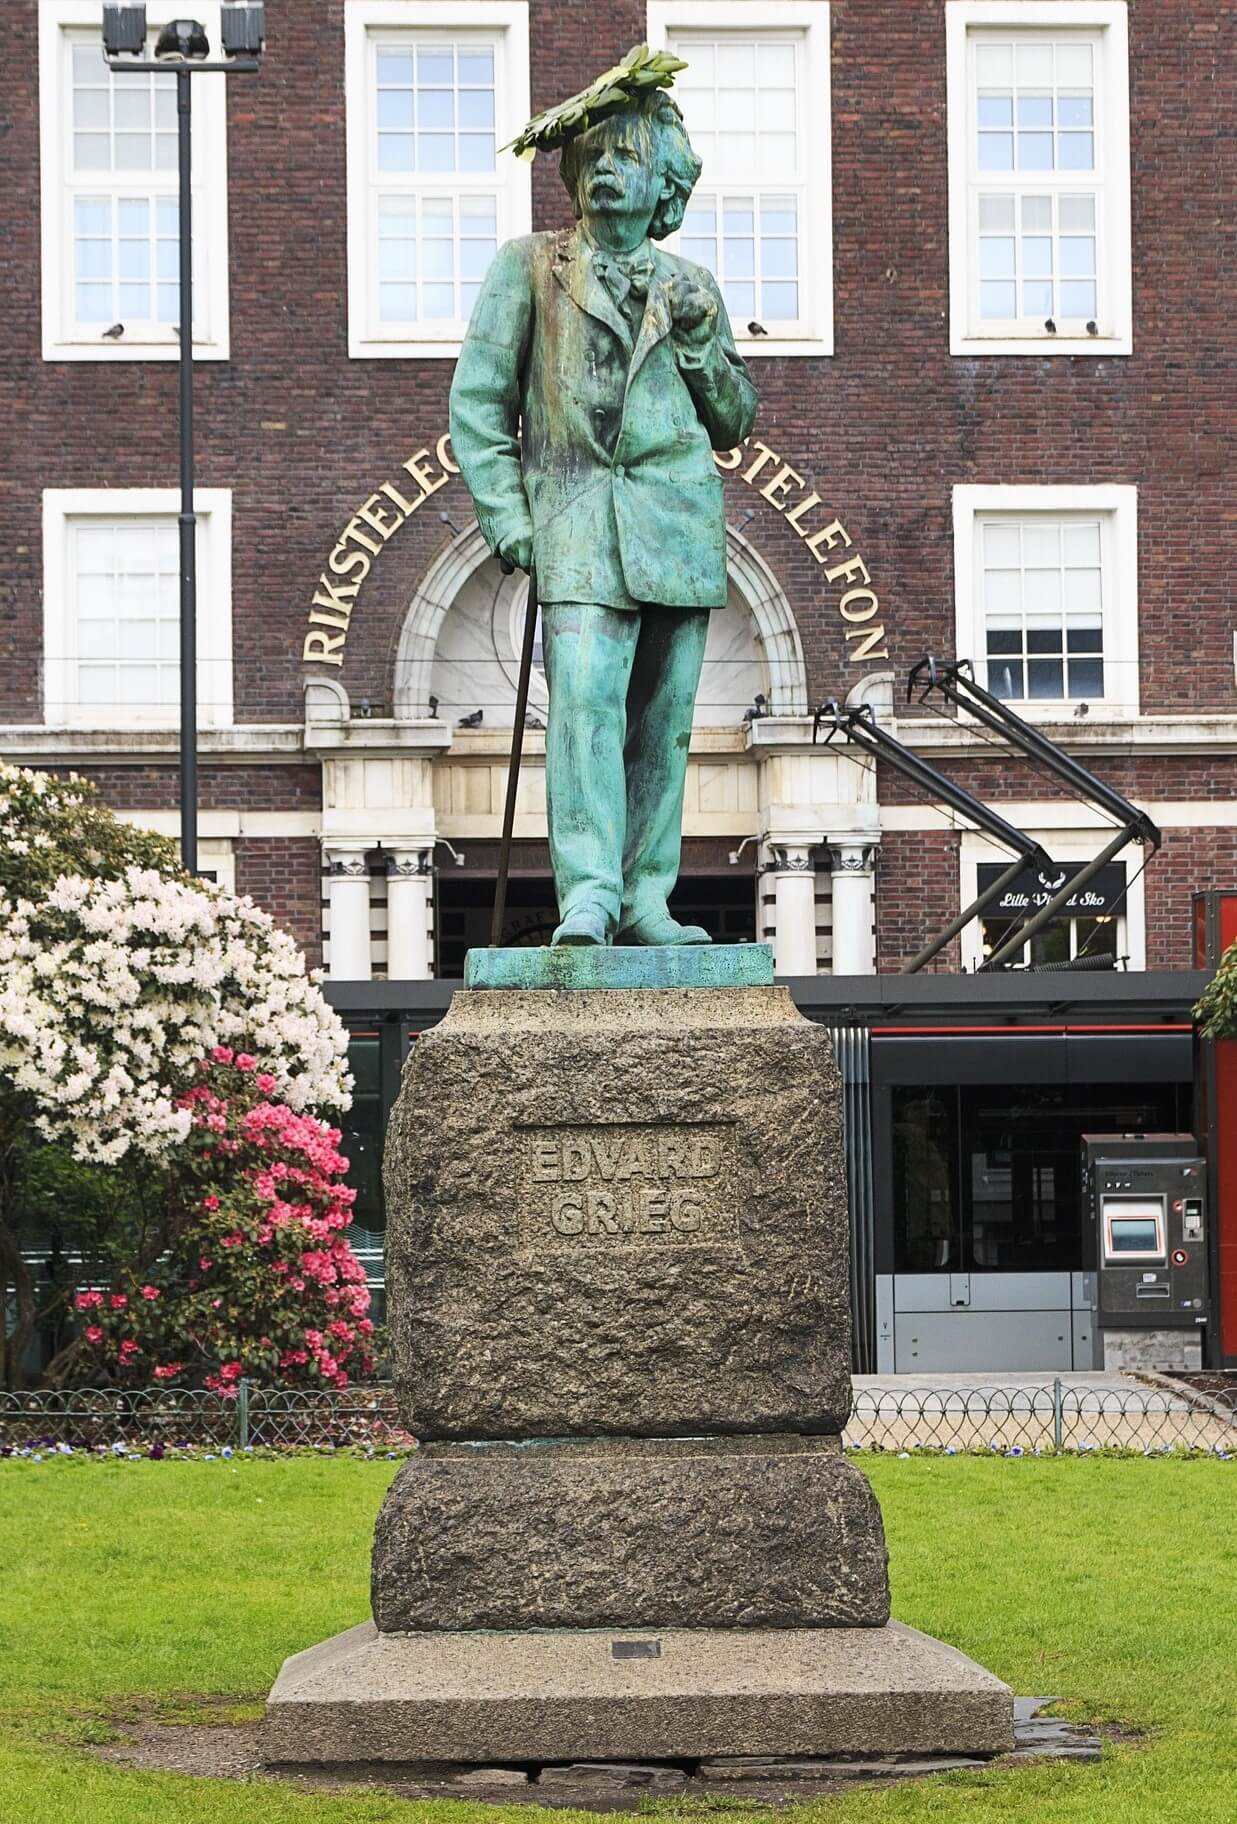 노르웨이 베르겐에 세워진 그리그의 동상 이미지 사진입니다.